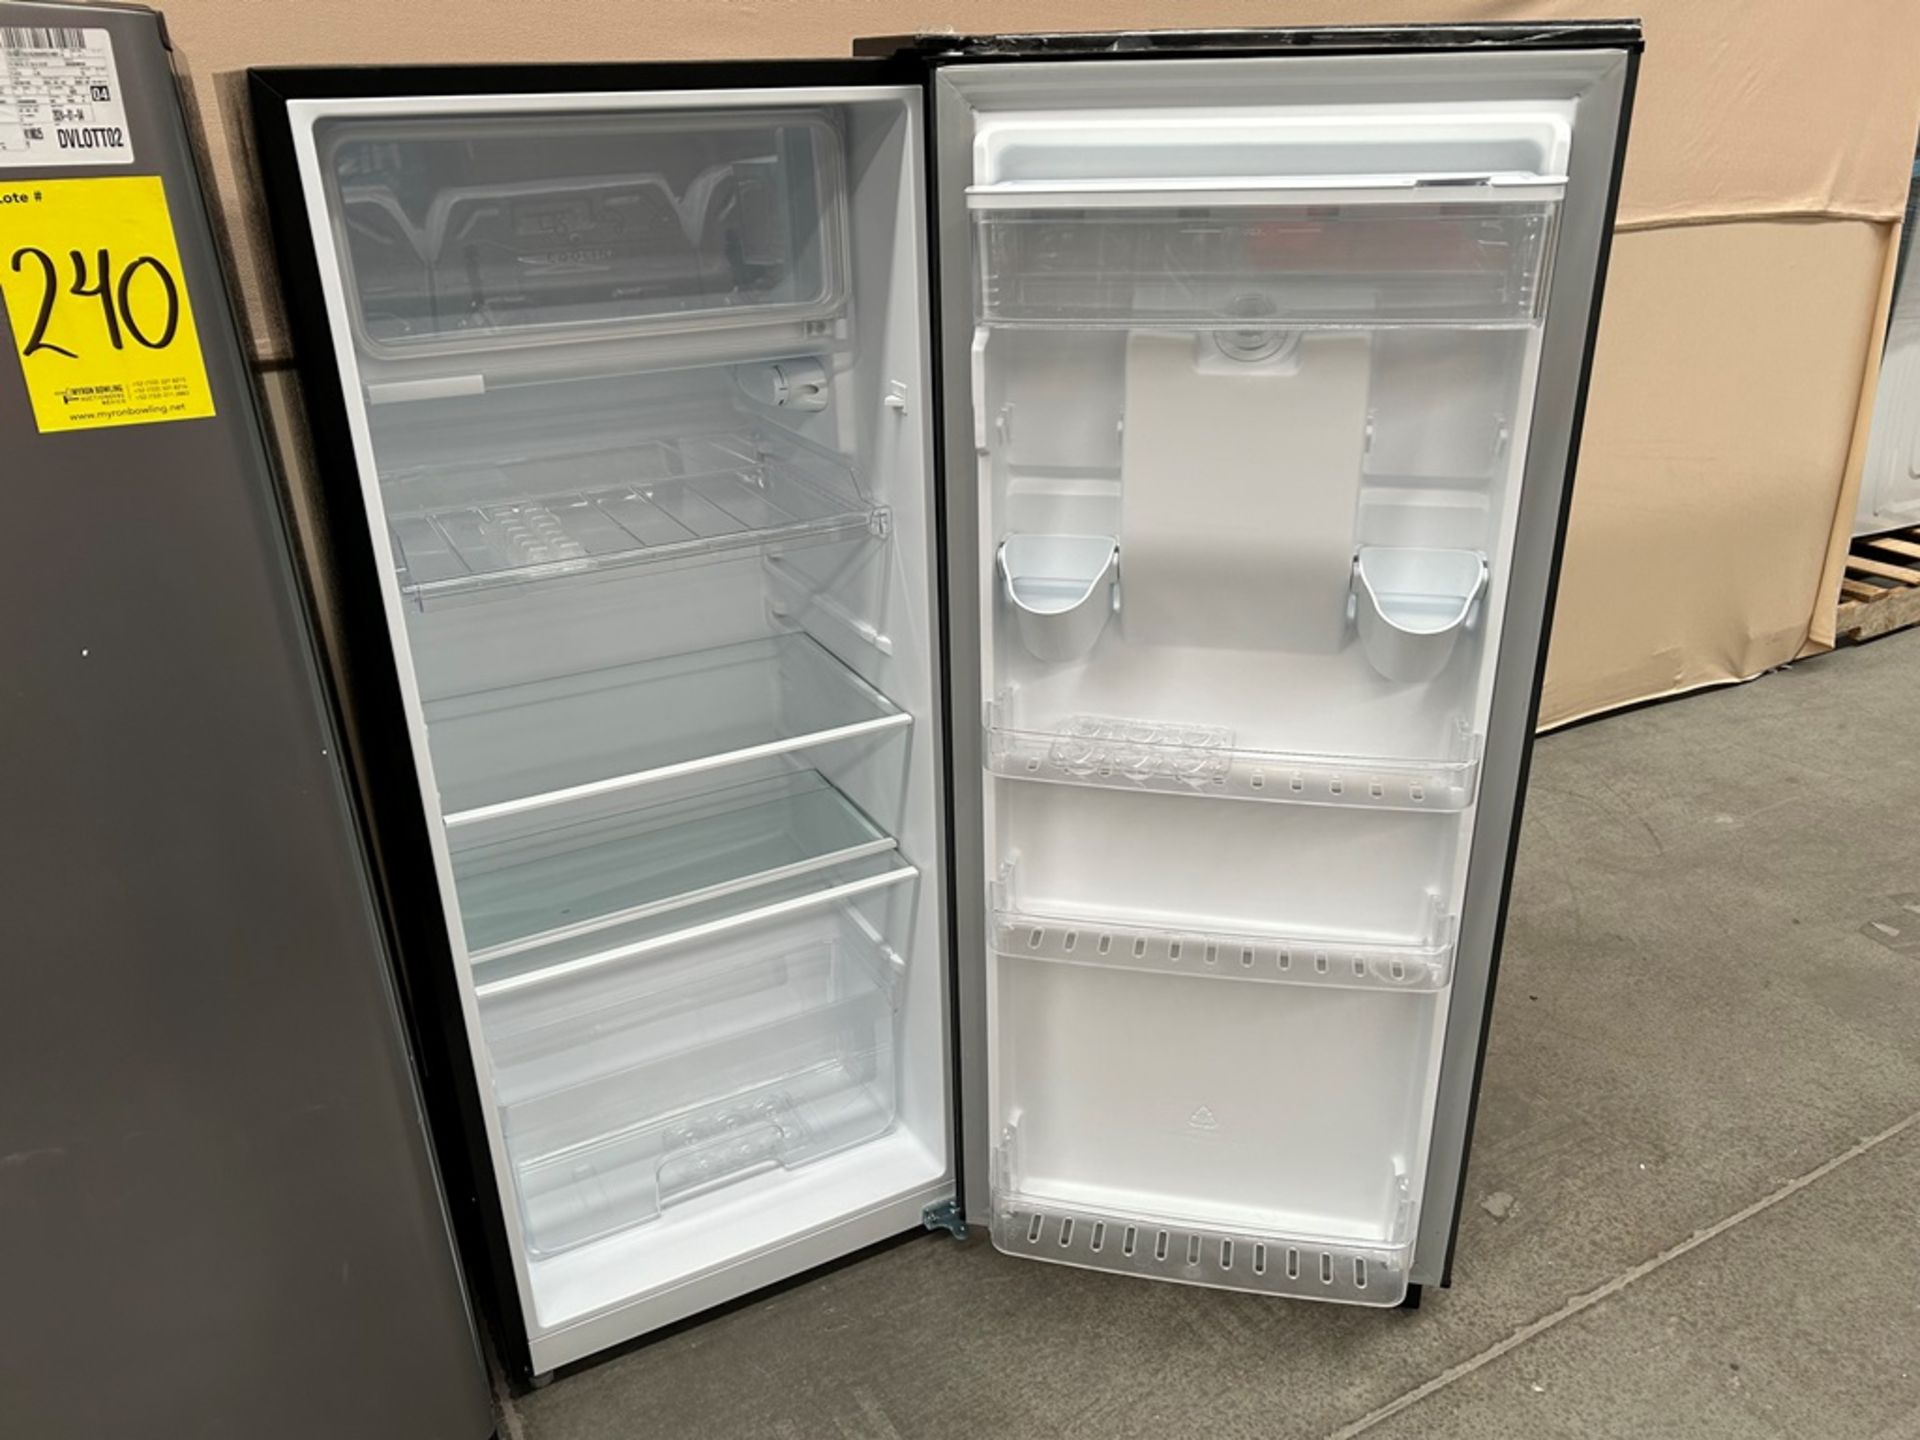 Lote de 2 refrigeradores contiene: Refrigerador con dispensador de agua Marca HISENSE, Modelo RR6D6 - Image 5 of 6